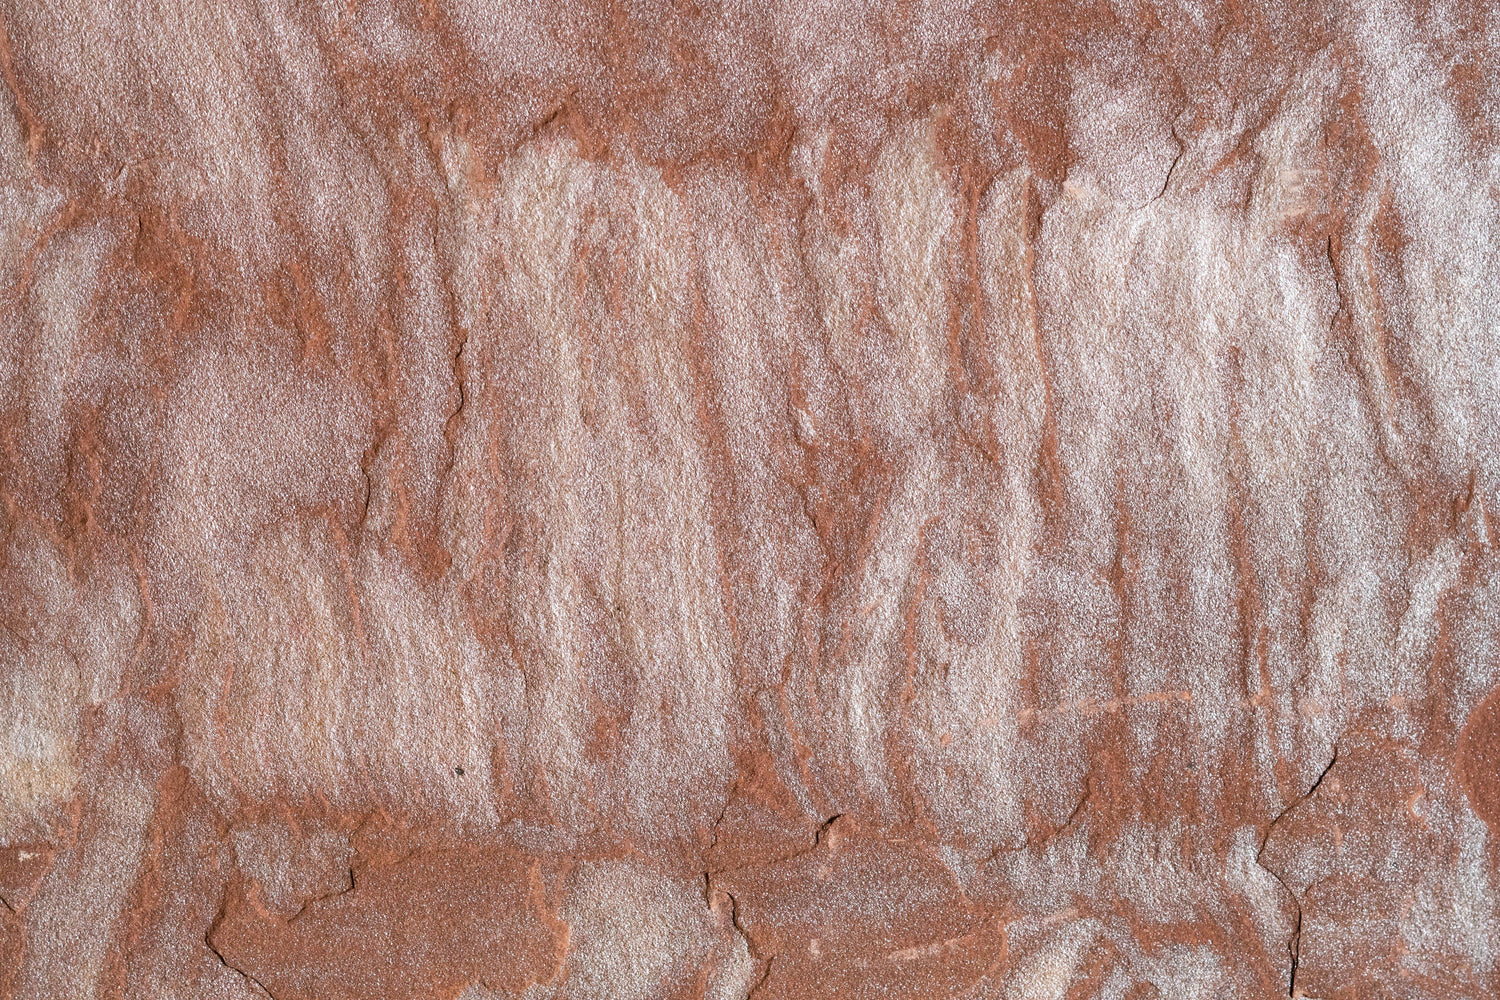 Full Tile Sample - Pink Leather Sandstone Tile - 18" x 18" x 1/2" Natural Cleft Face, Gauged Back